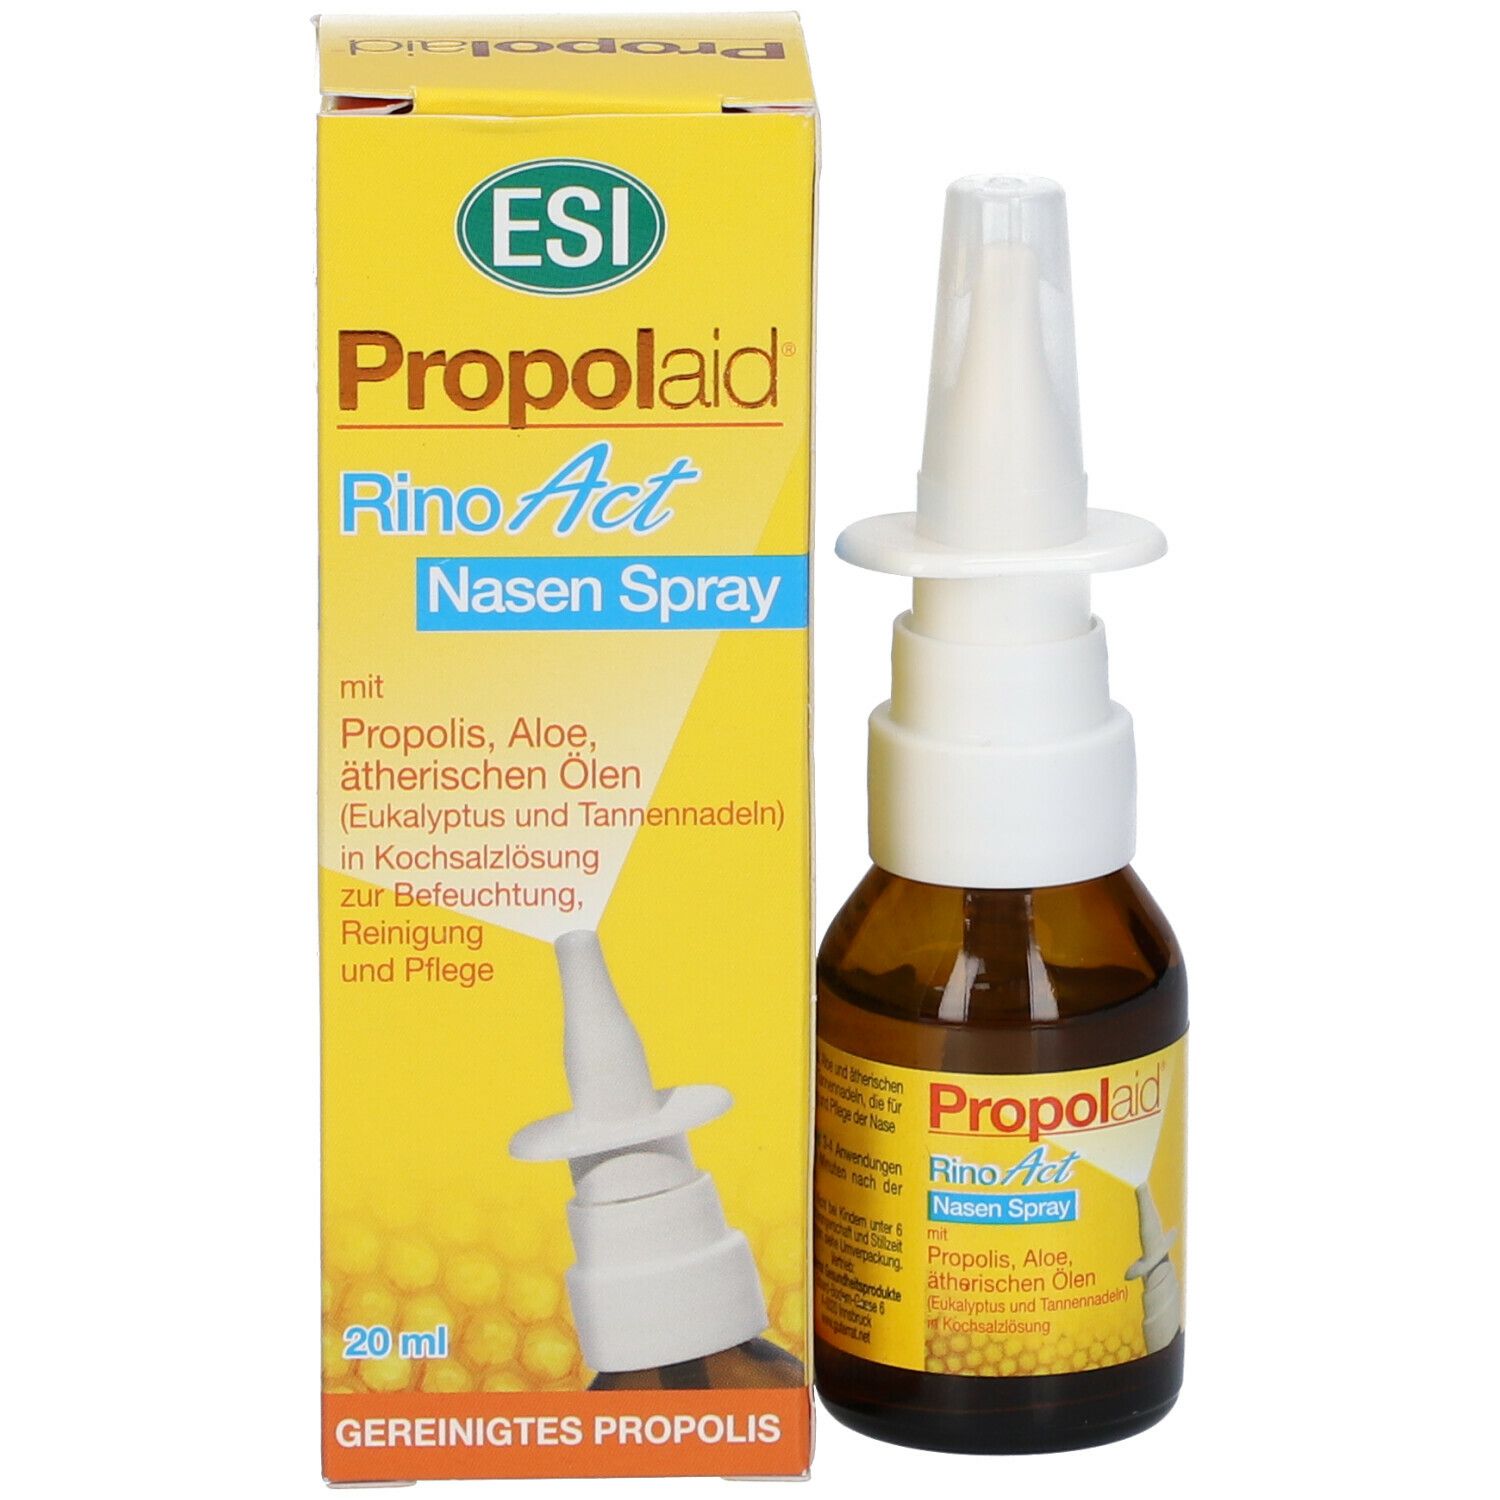 Propolaid RinoAct Nasen Spray